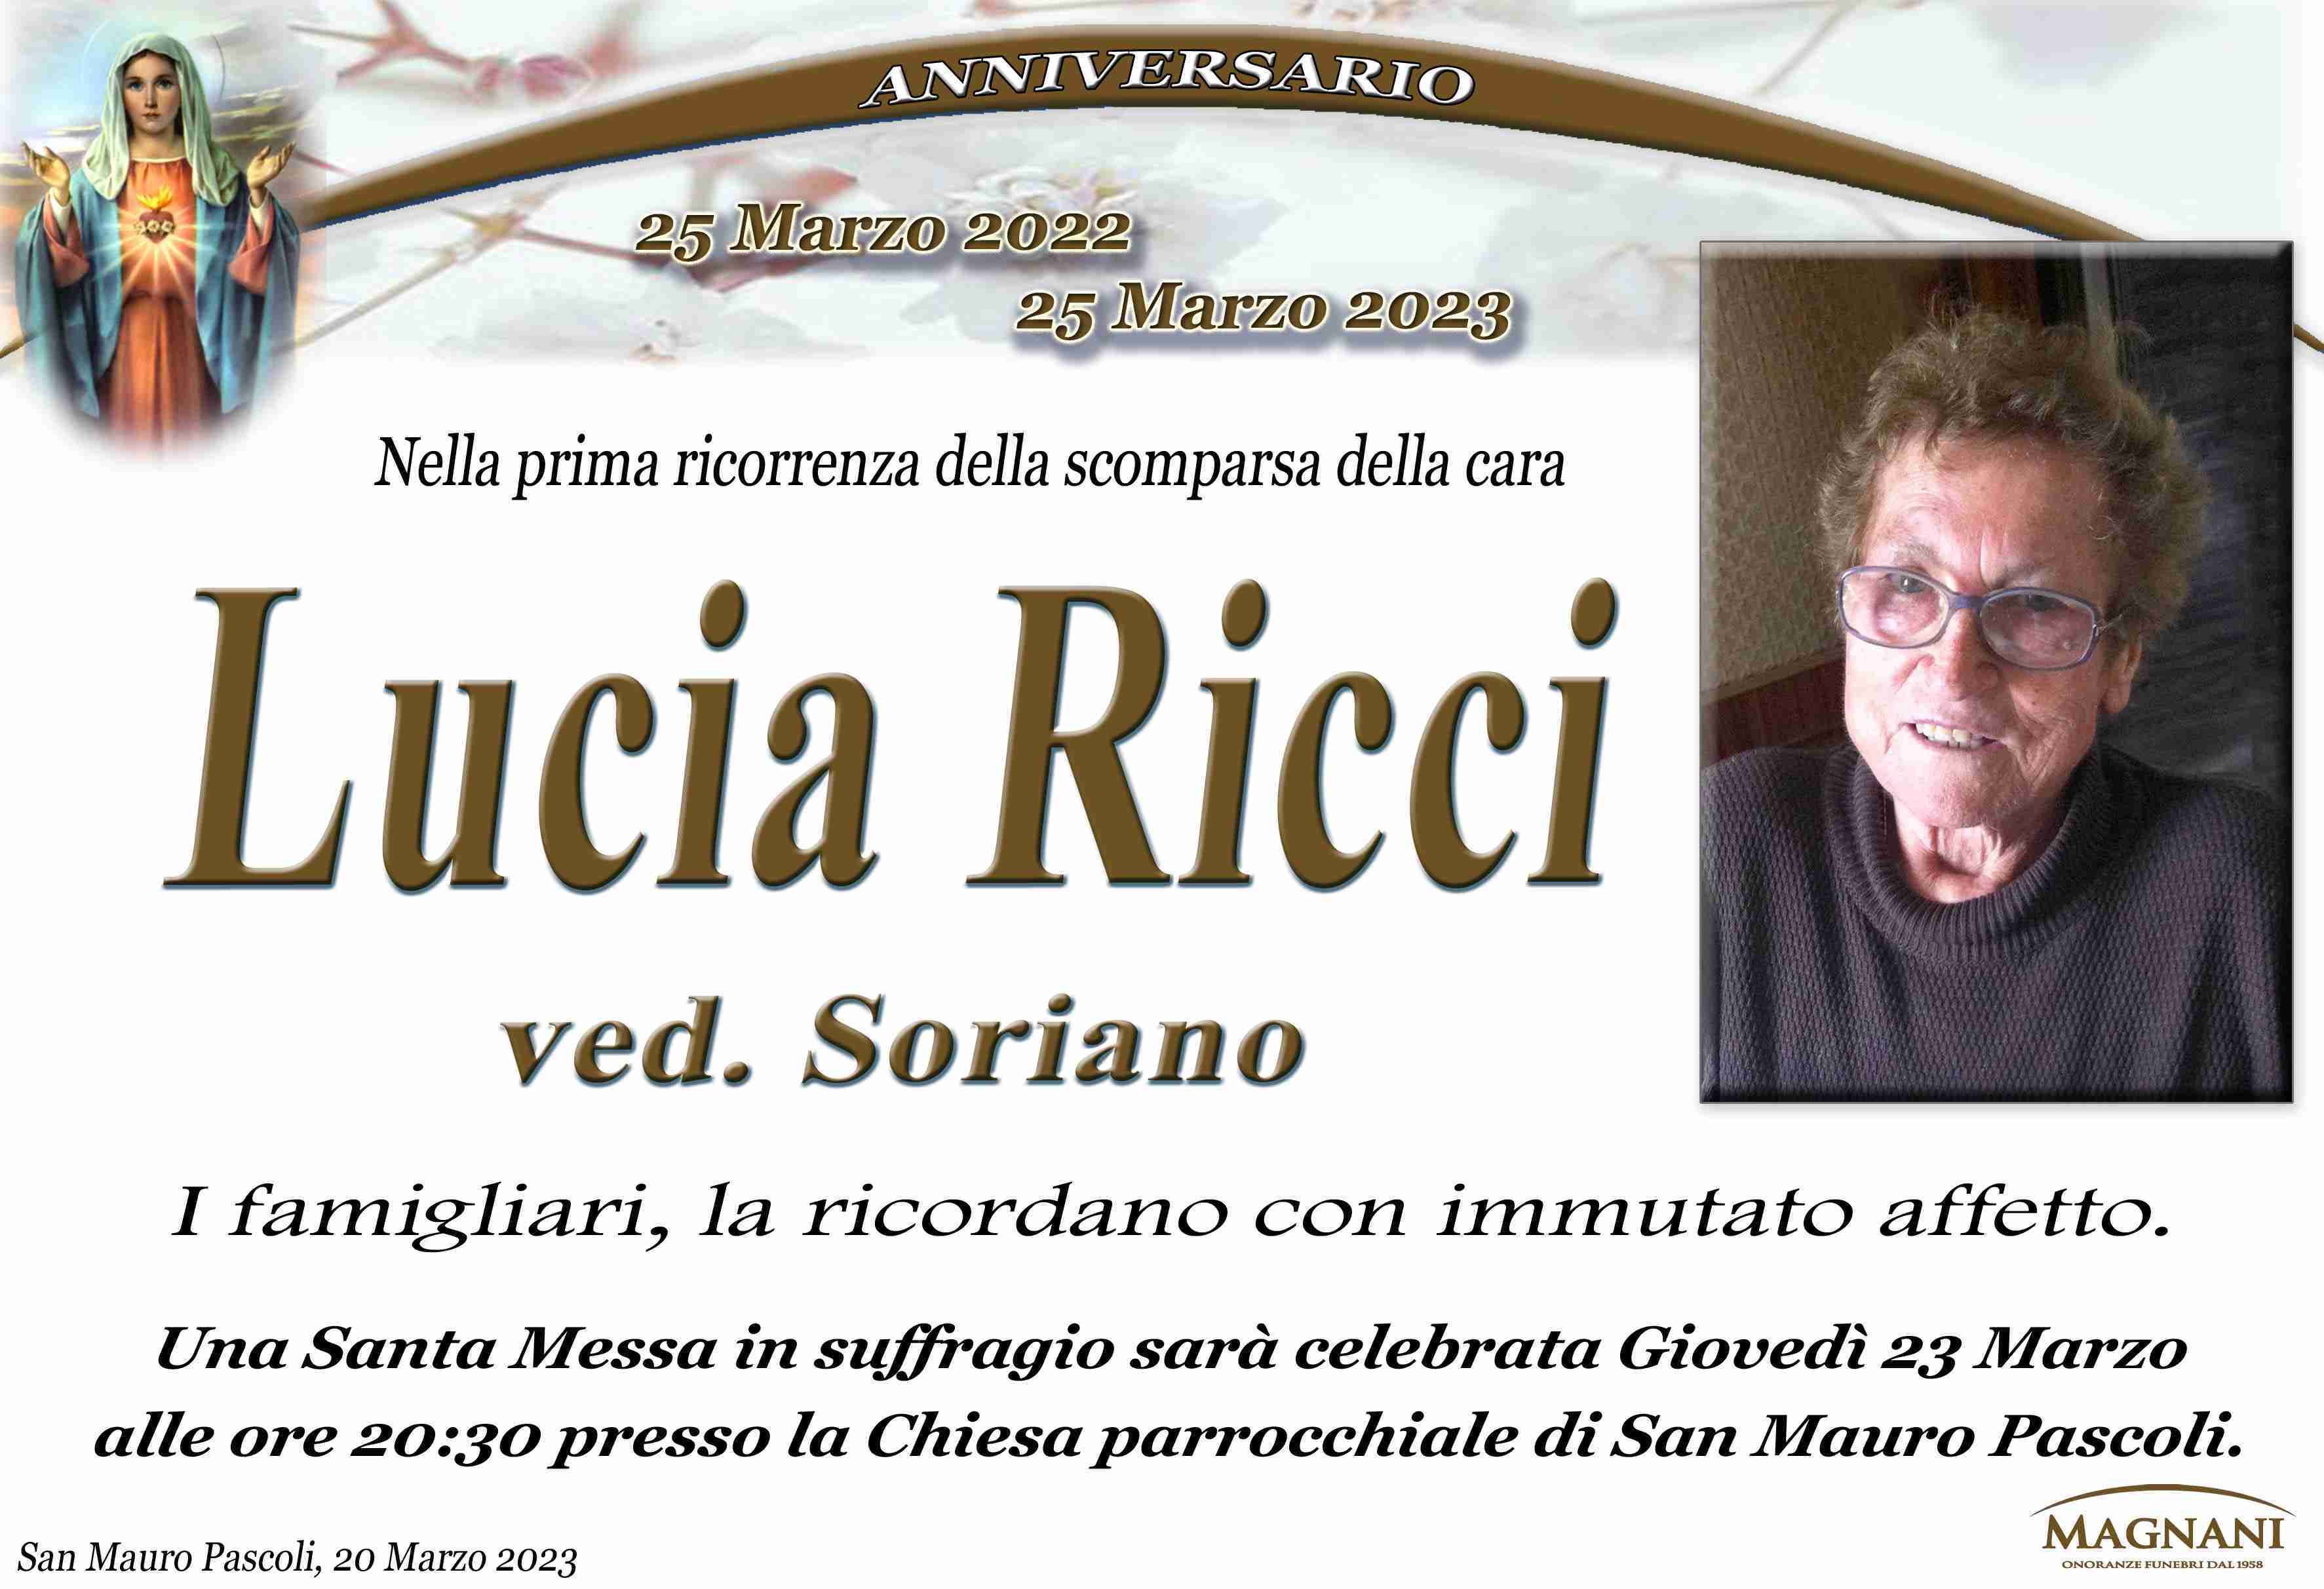 Lucia Ricci